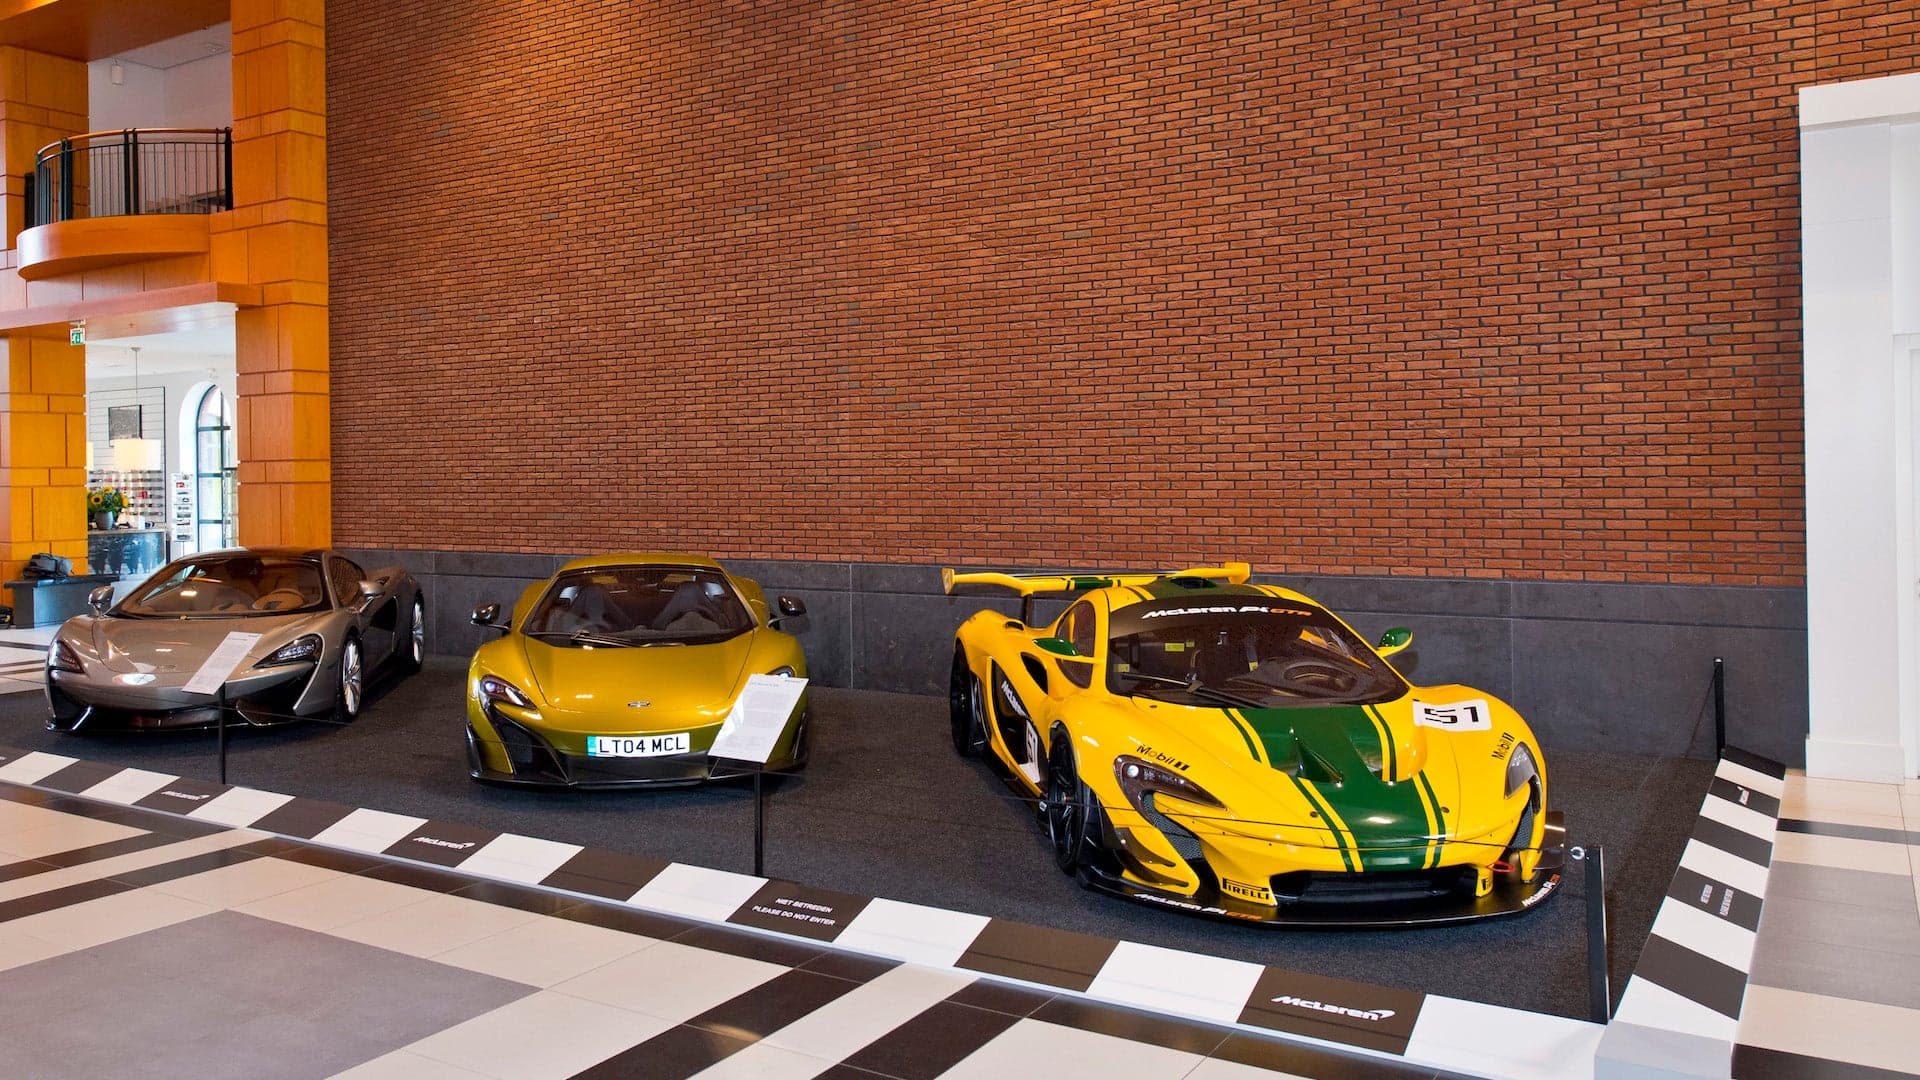 McLaren Opens Heritage Exhibit at Car Museum in the Netherlands